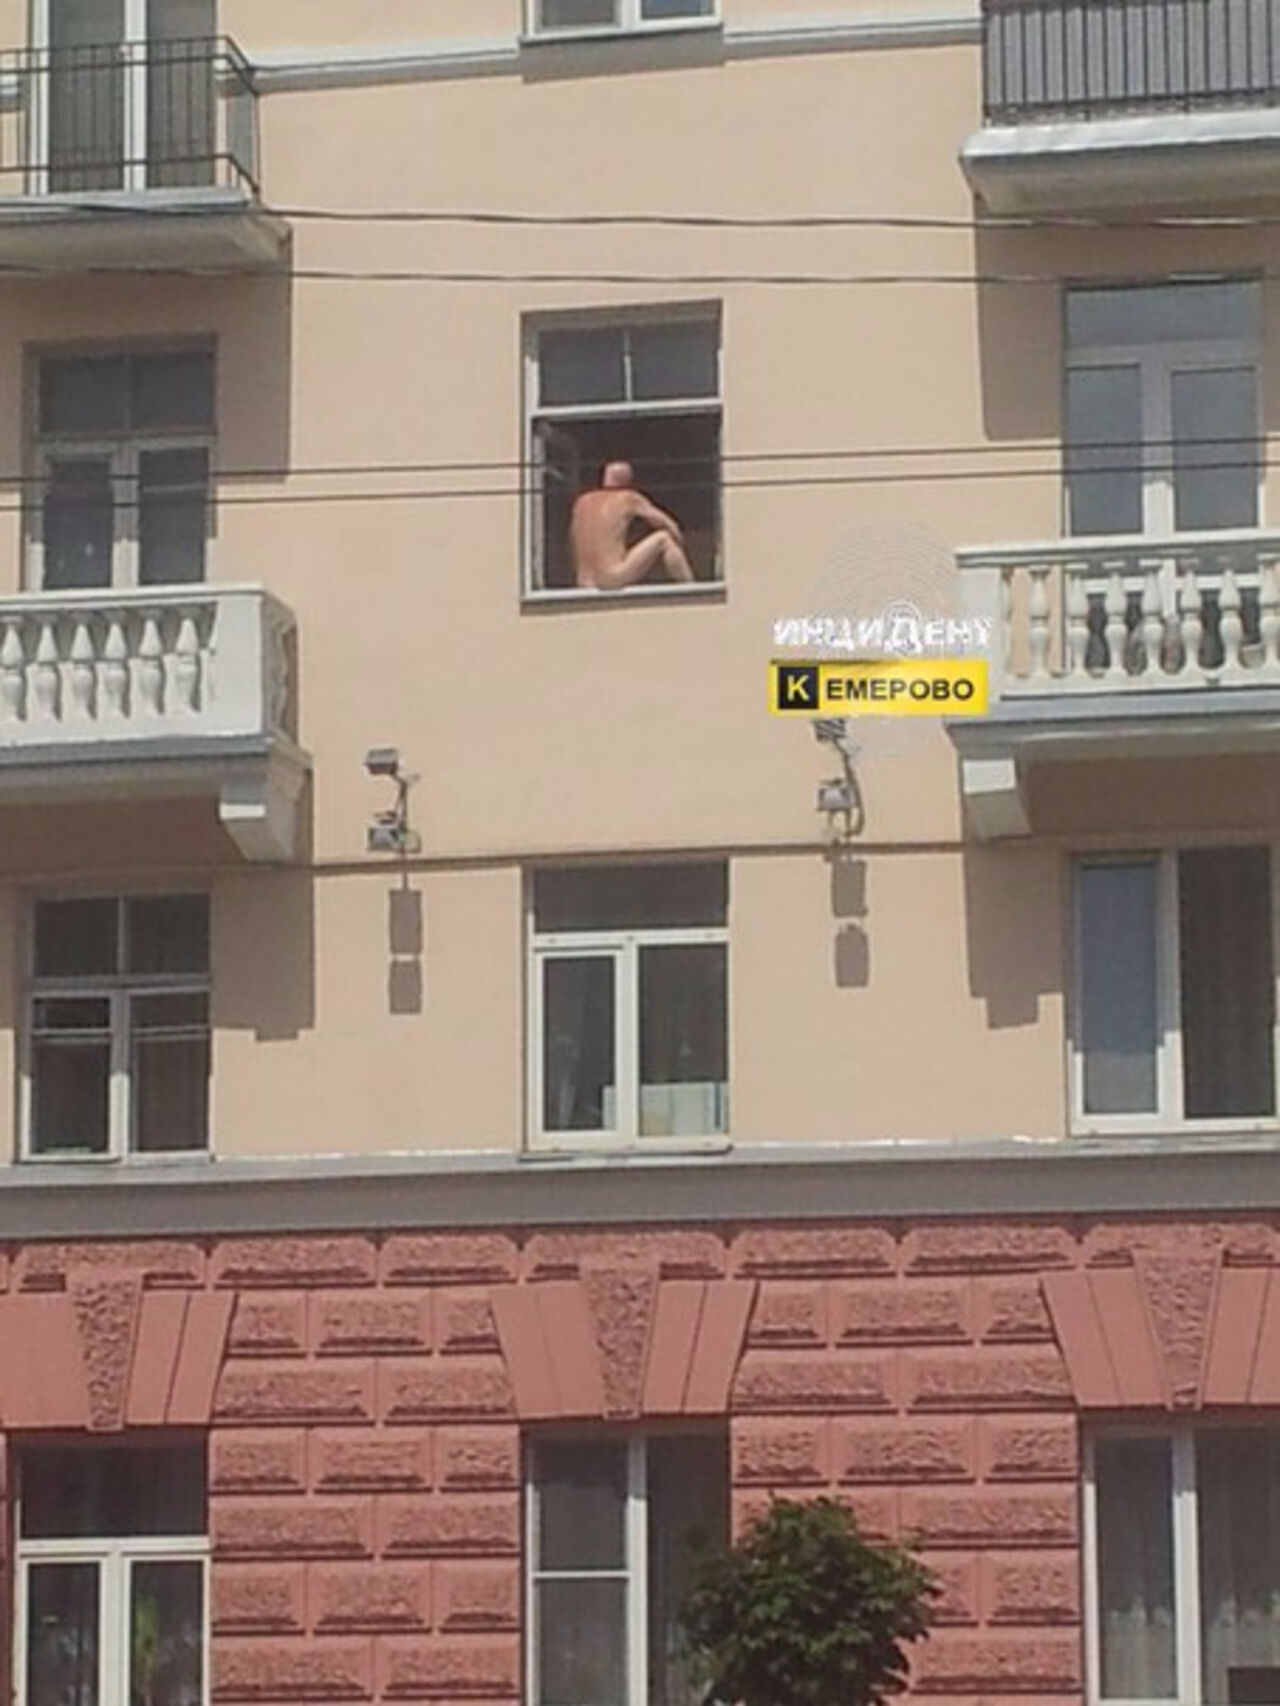 intim-top.ru - Голый мужчина пытался спрыгнуть с балкона после ссоры с женой